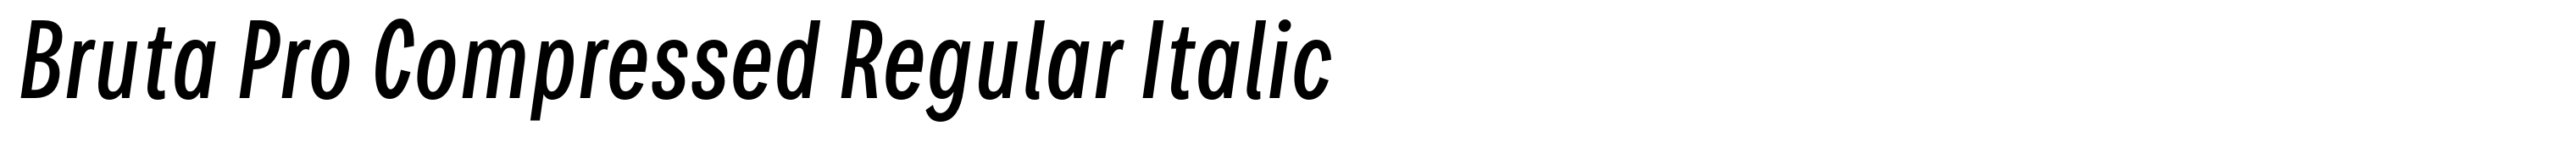 Bruta Pro Compressed Regular Italic